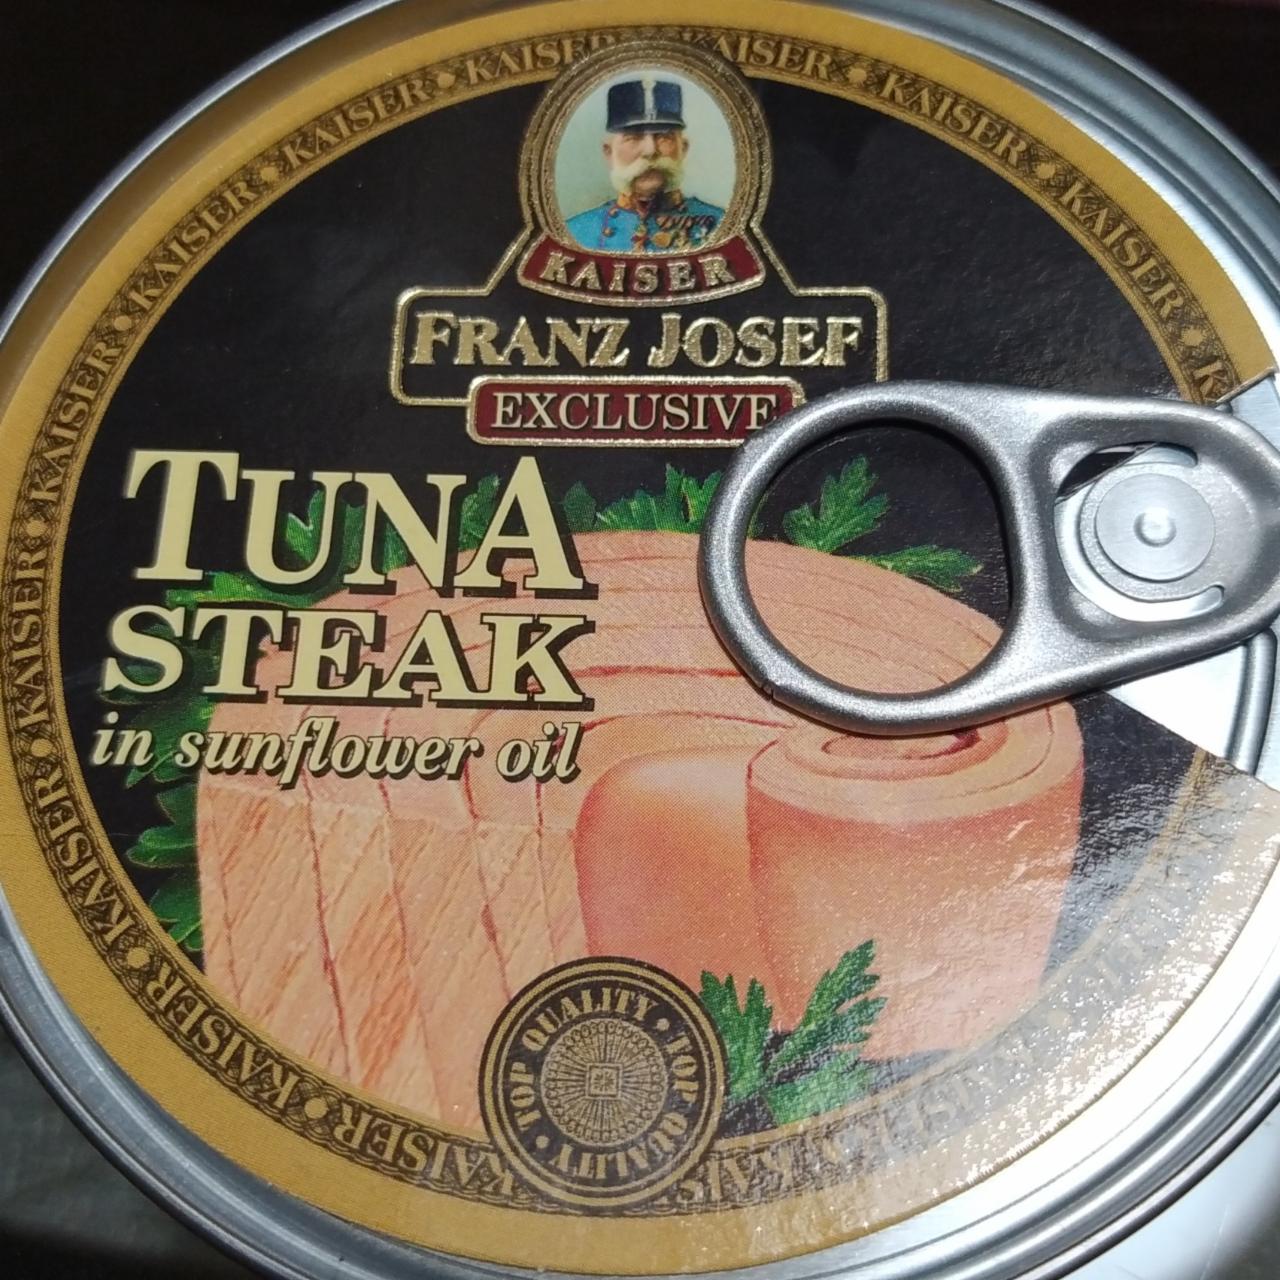 Fotografie - Tuna steak in sunflower oil Kaiser Franz Josef Exclusive